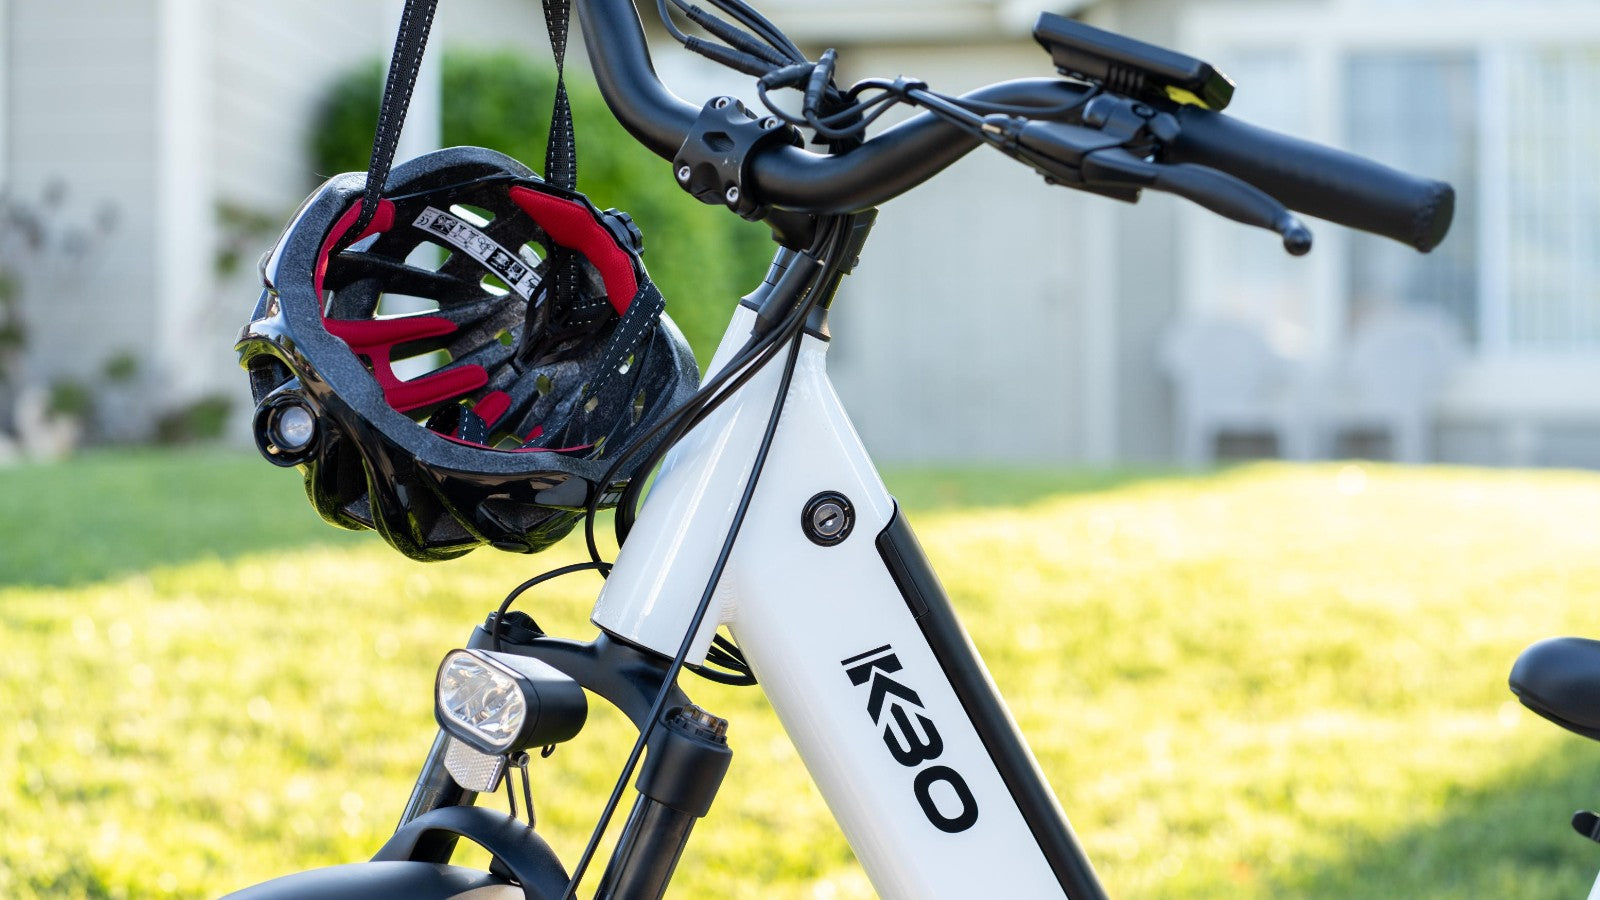 KBO Electric Bike and Bike Helmet